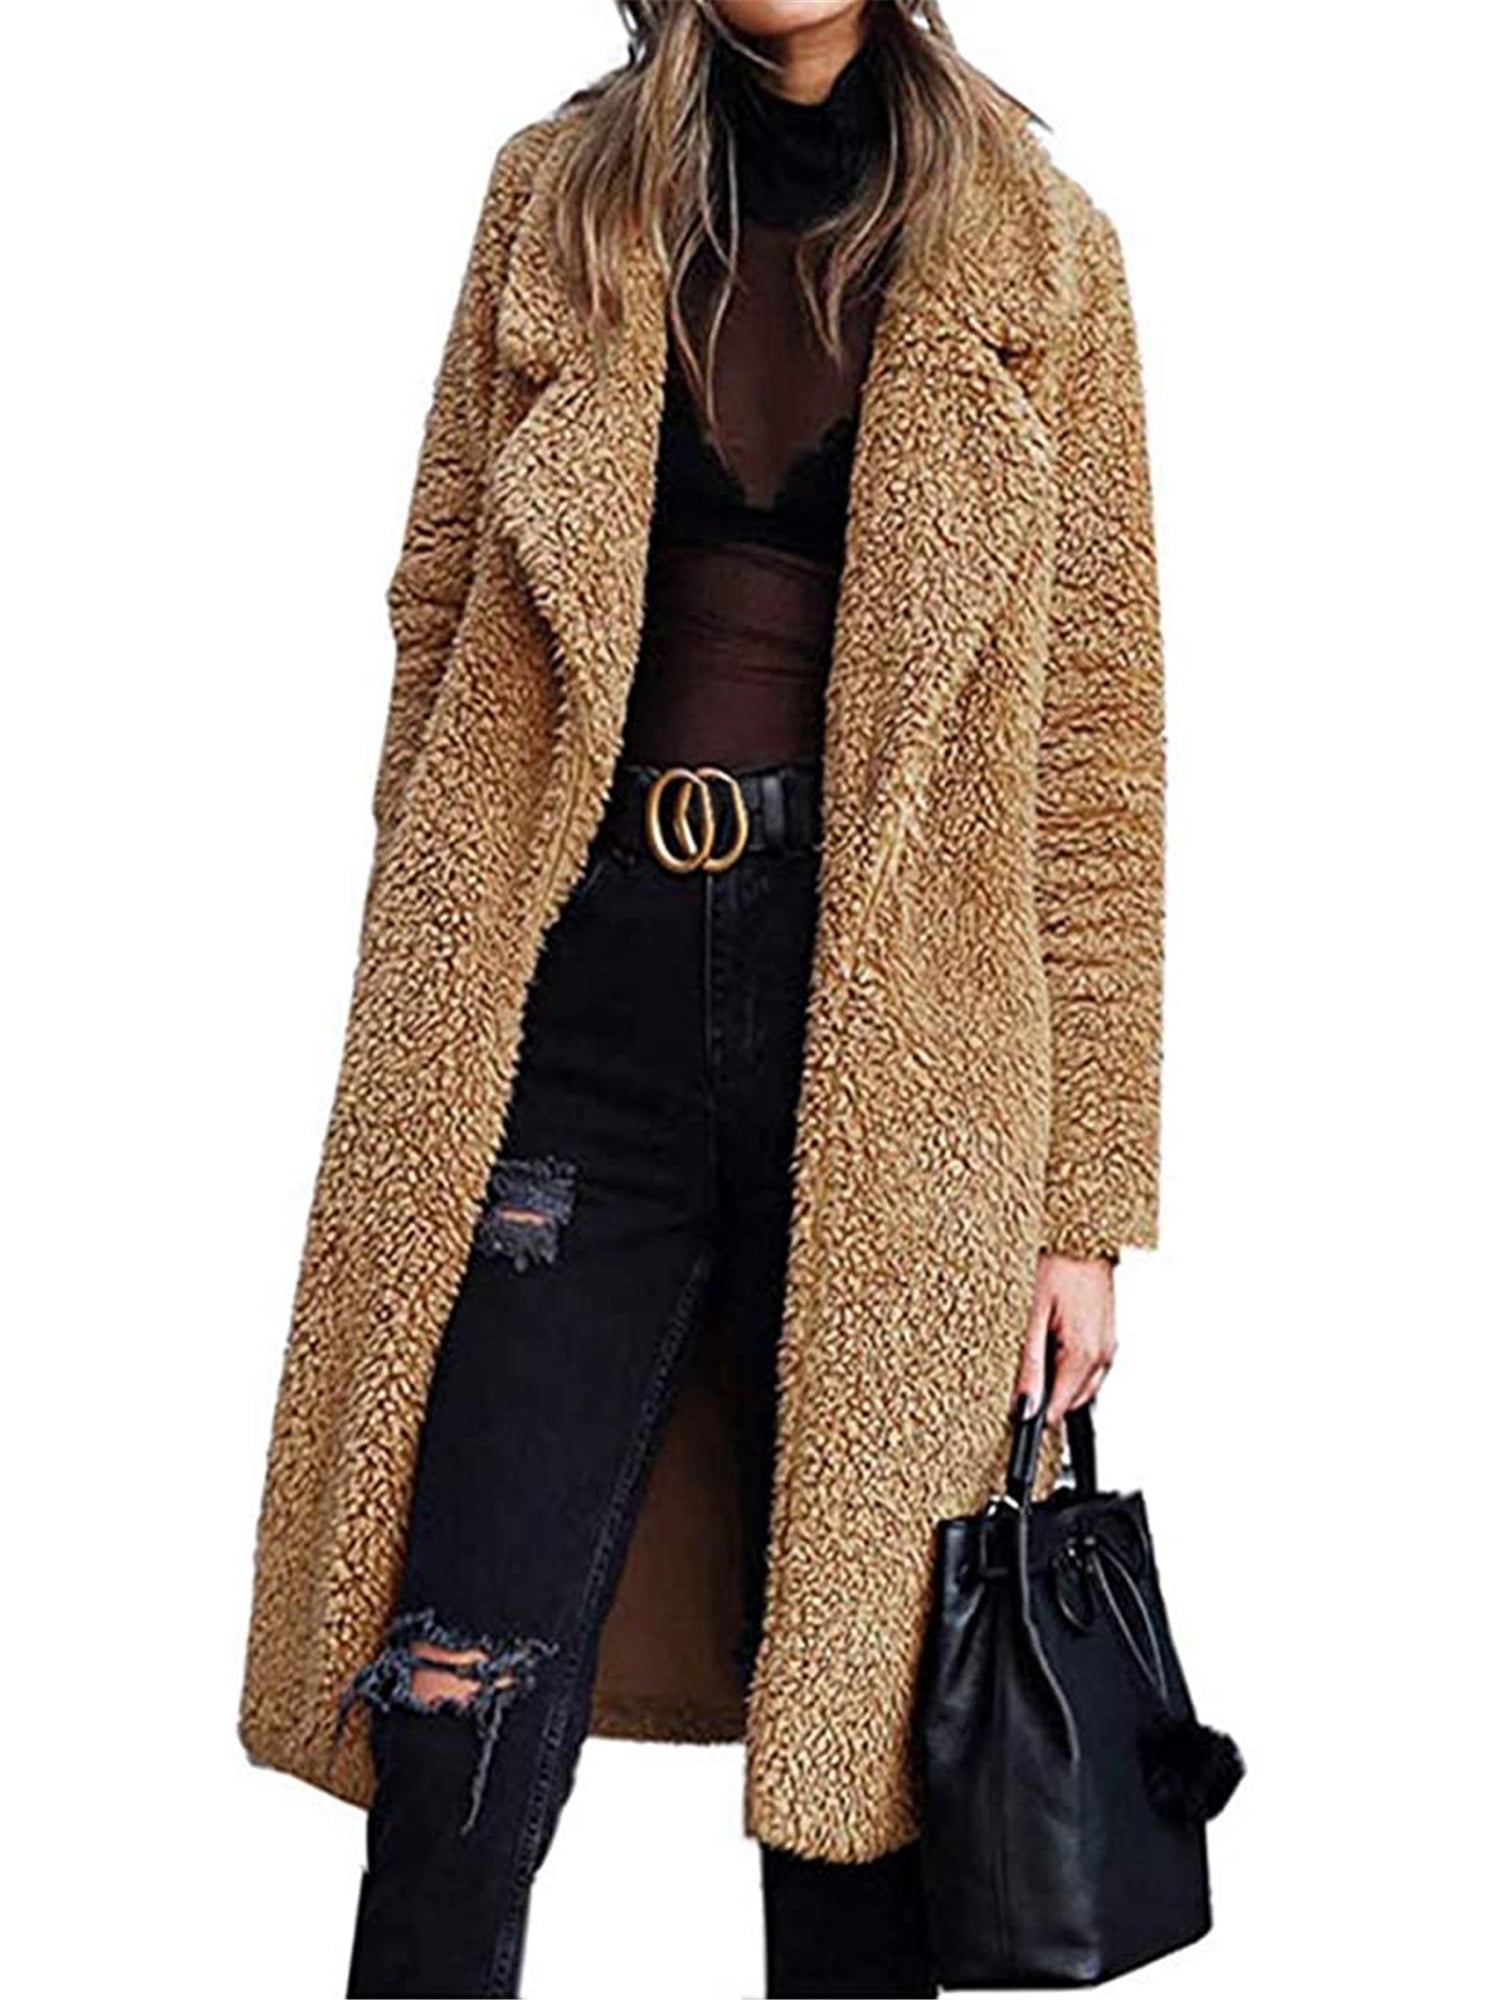 Womens Coats Lapel Fuzzy Fleece Overcoats Fashion Open Front Long Cardigan Faux Fur Warm Winter Outwear Jackets